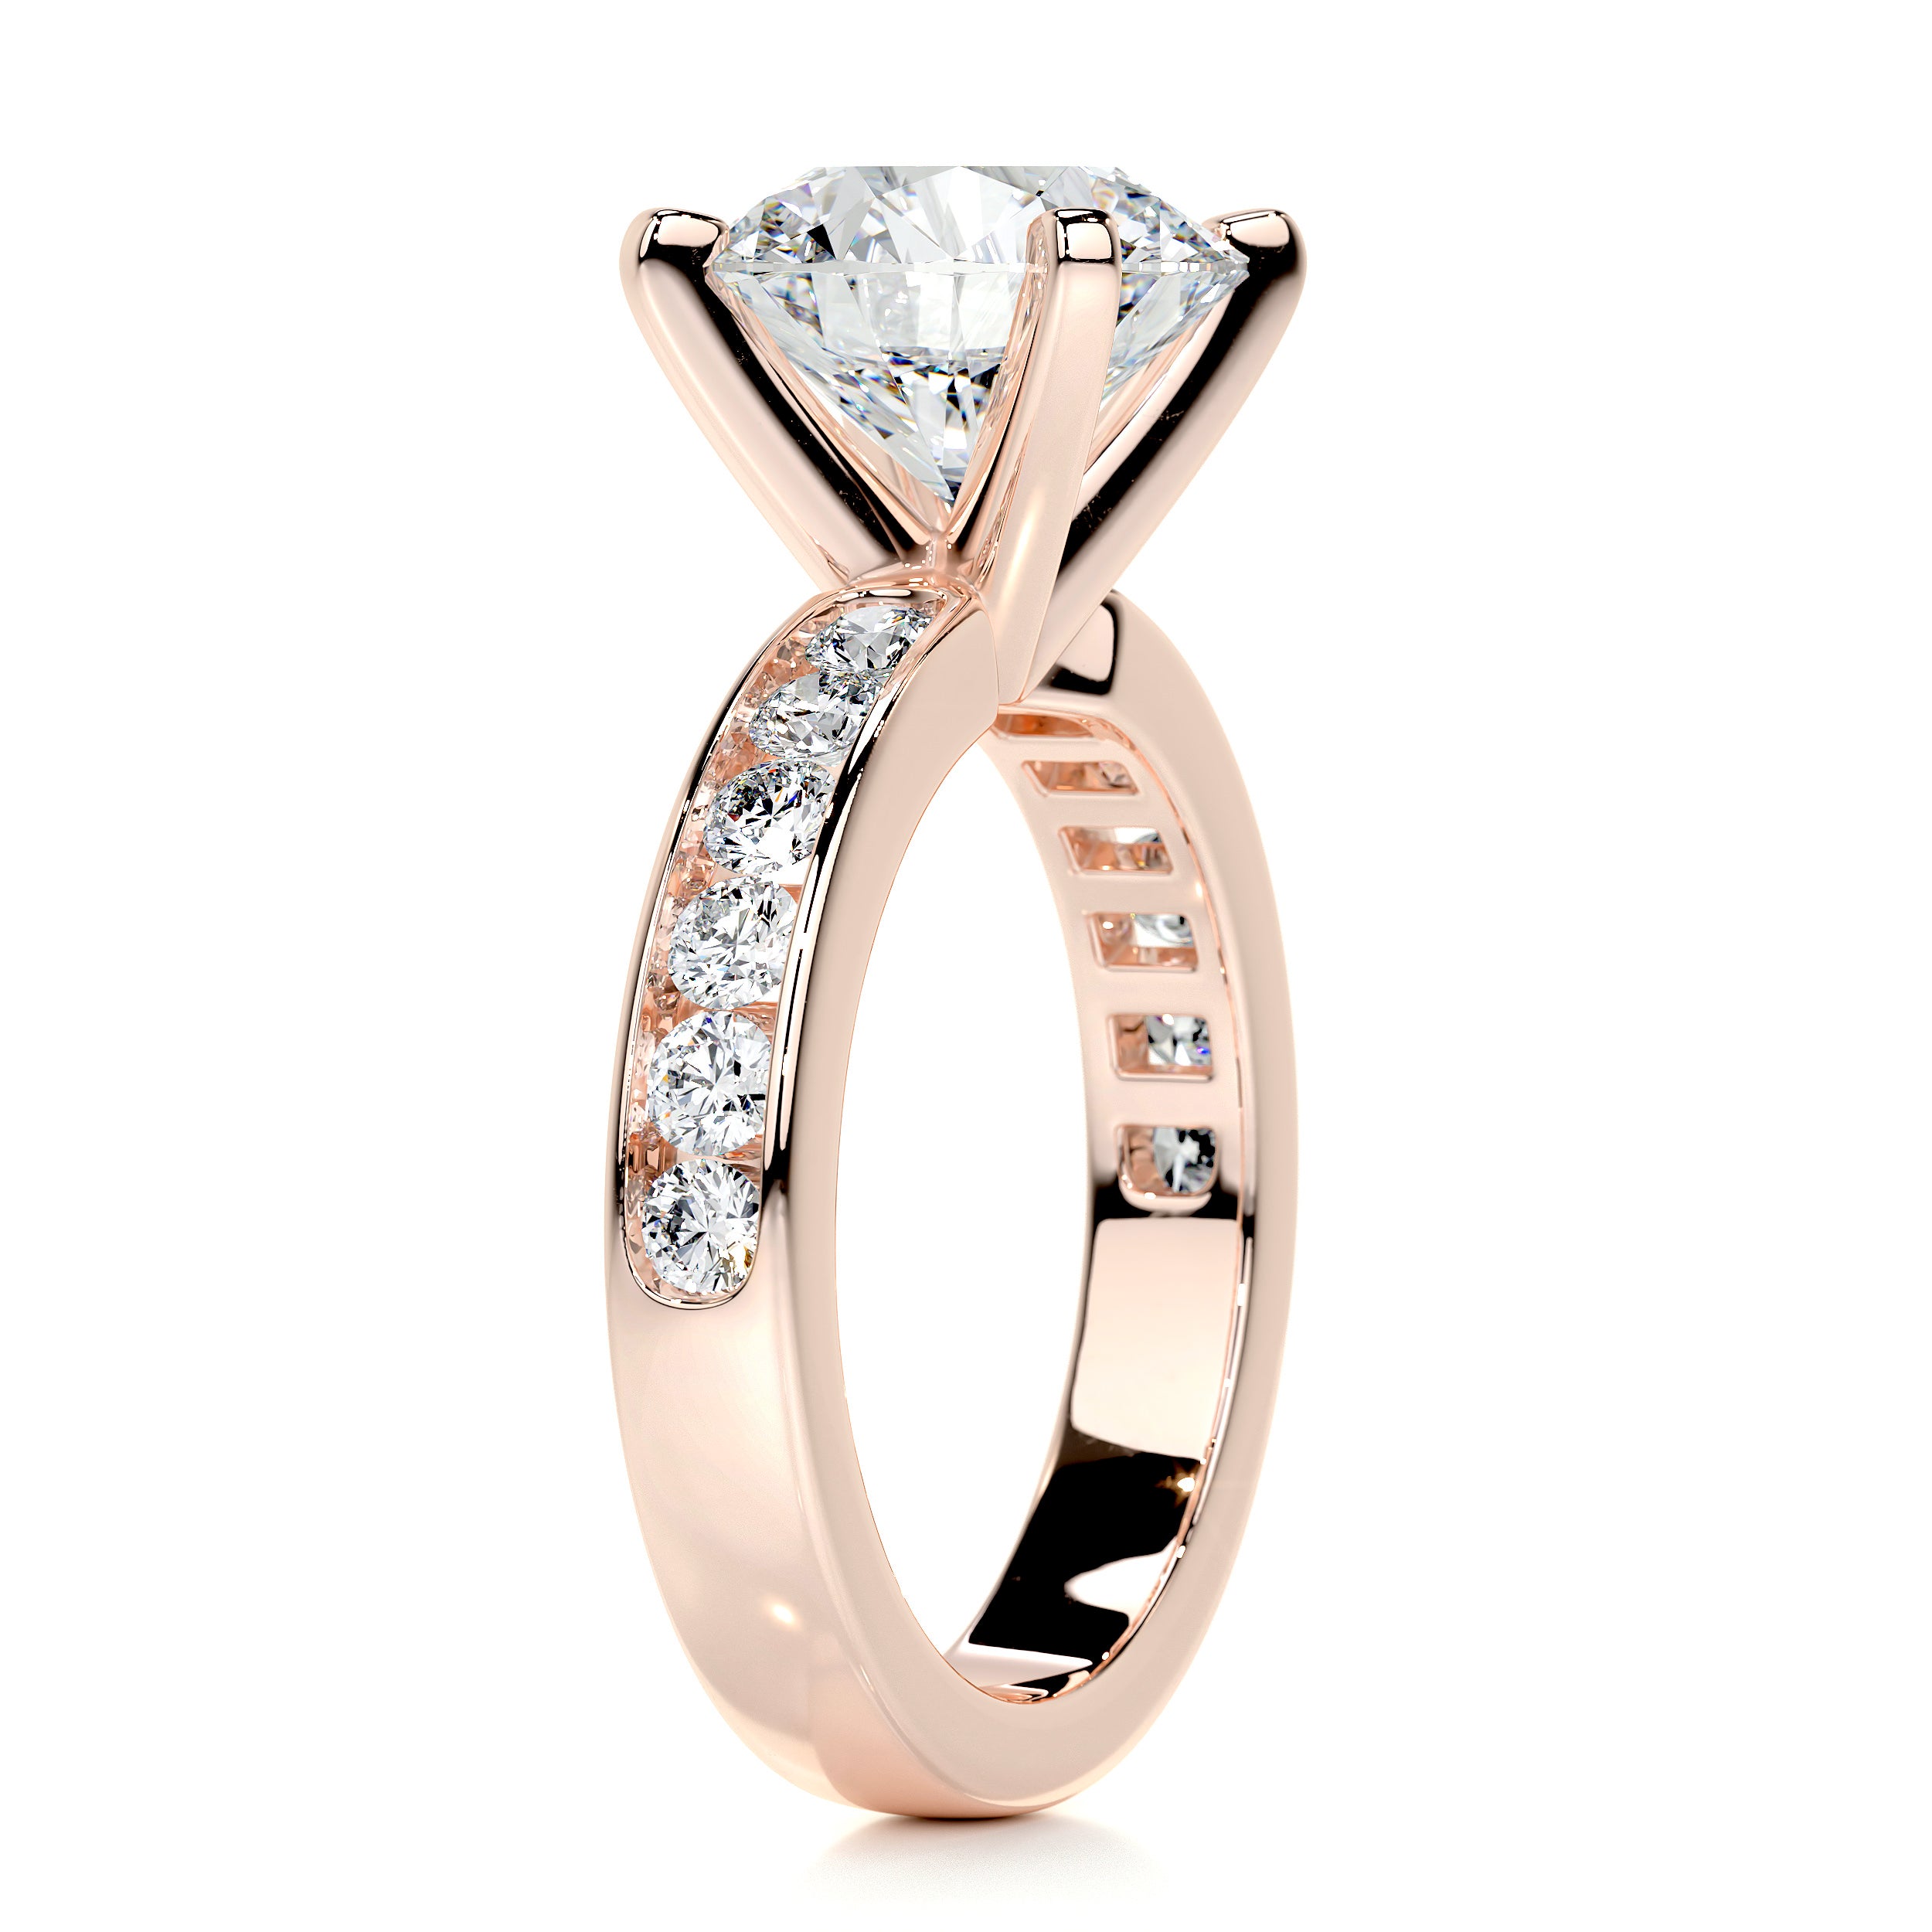 Giselle Diamond Engagement Ring -14K Rose Gold